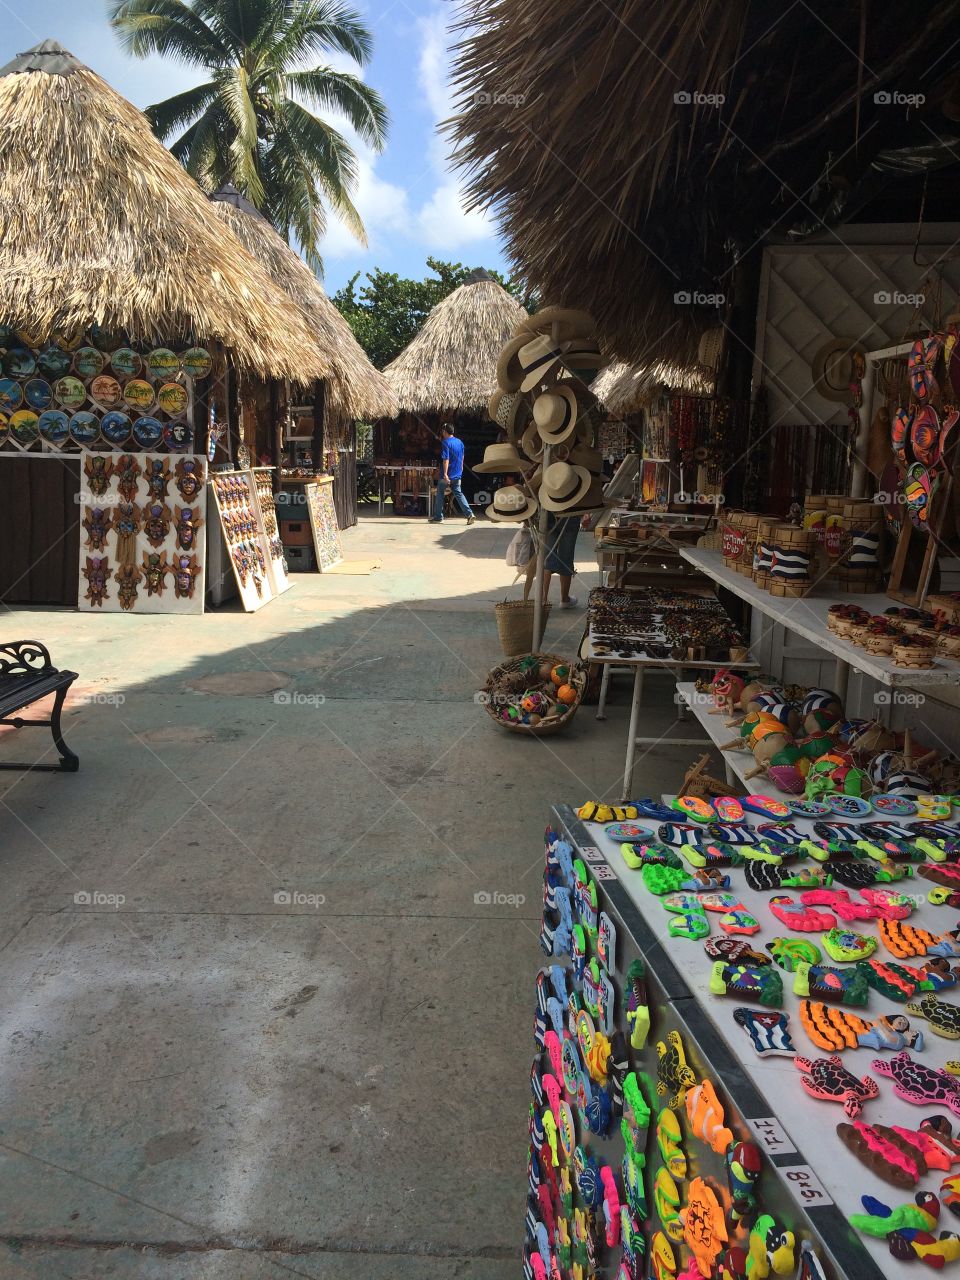 Shops in Cuba.